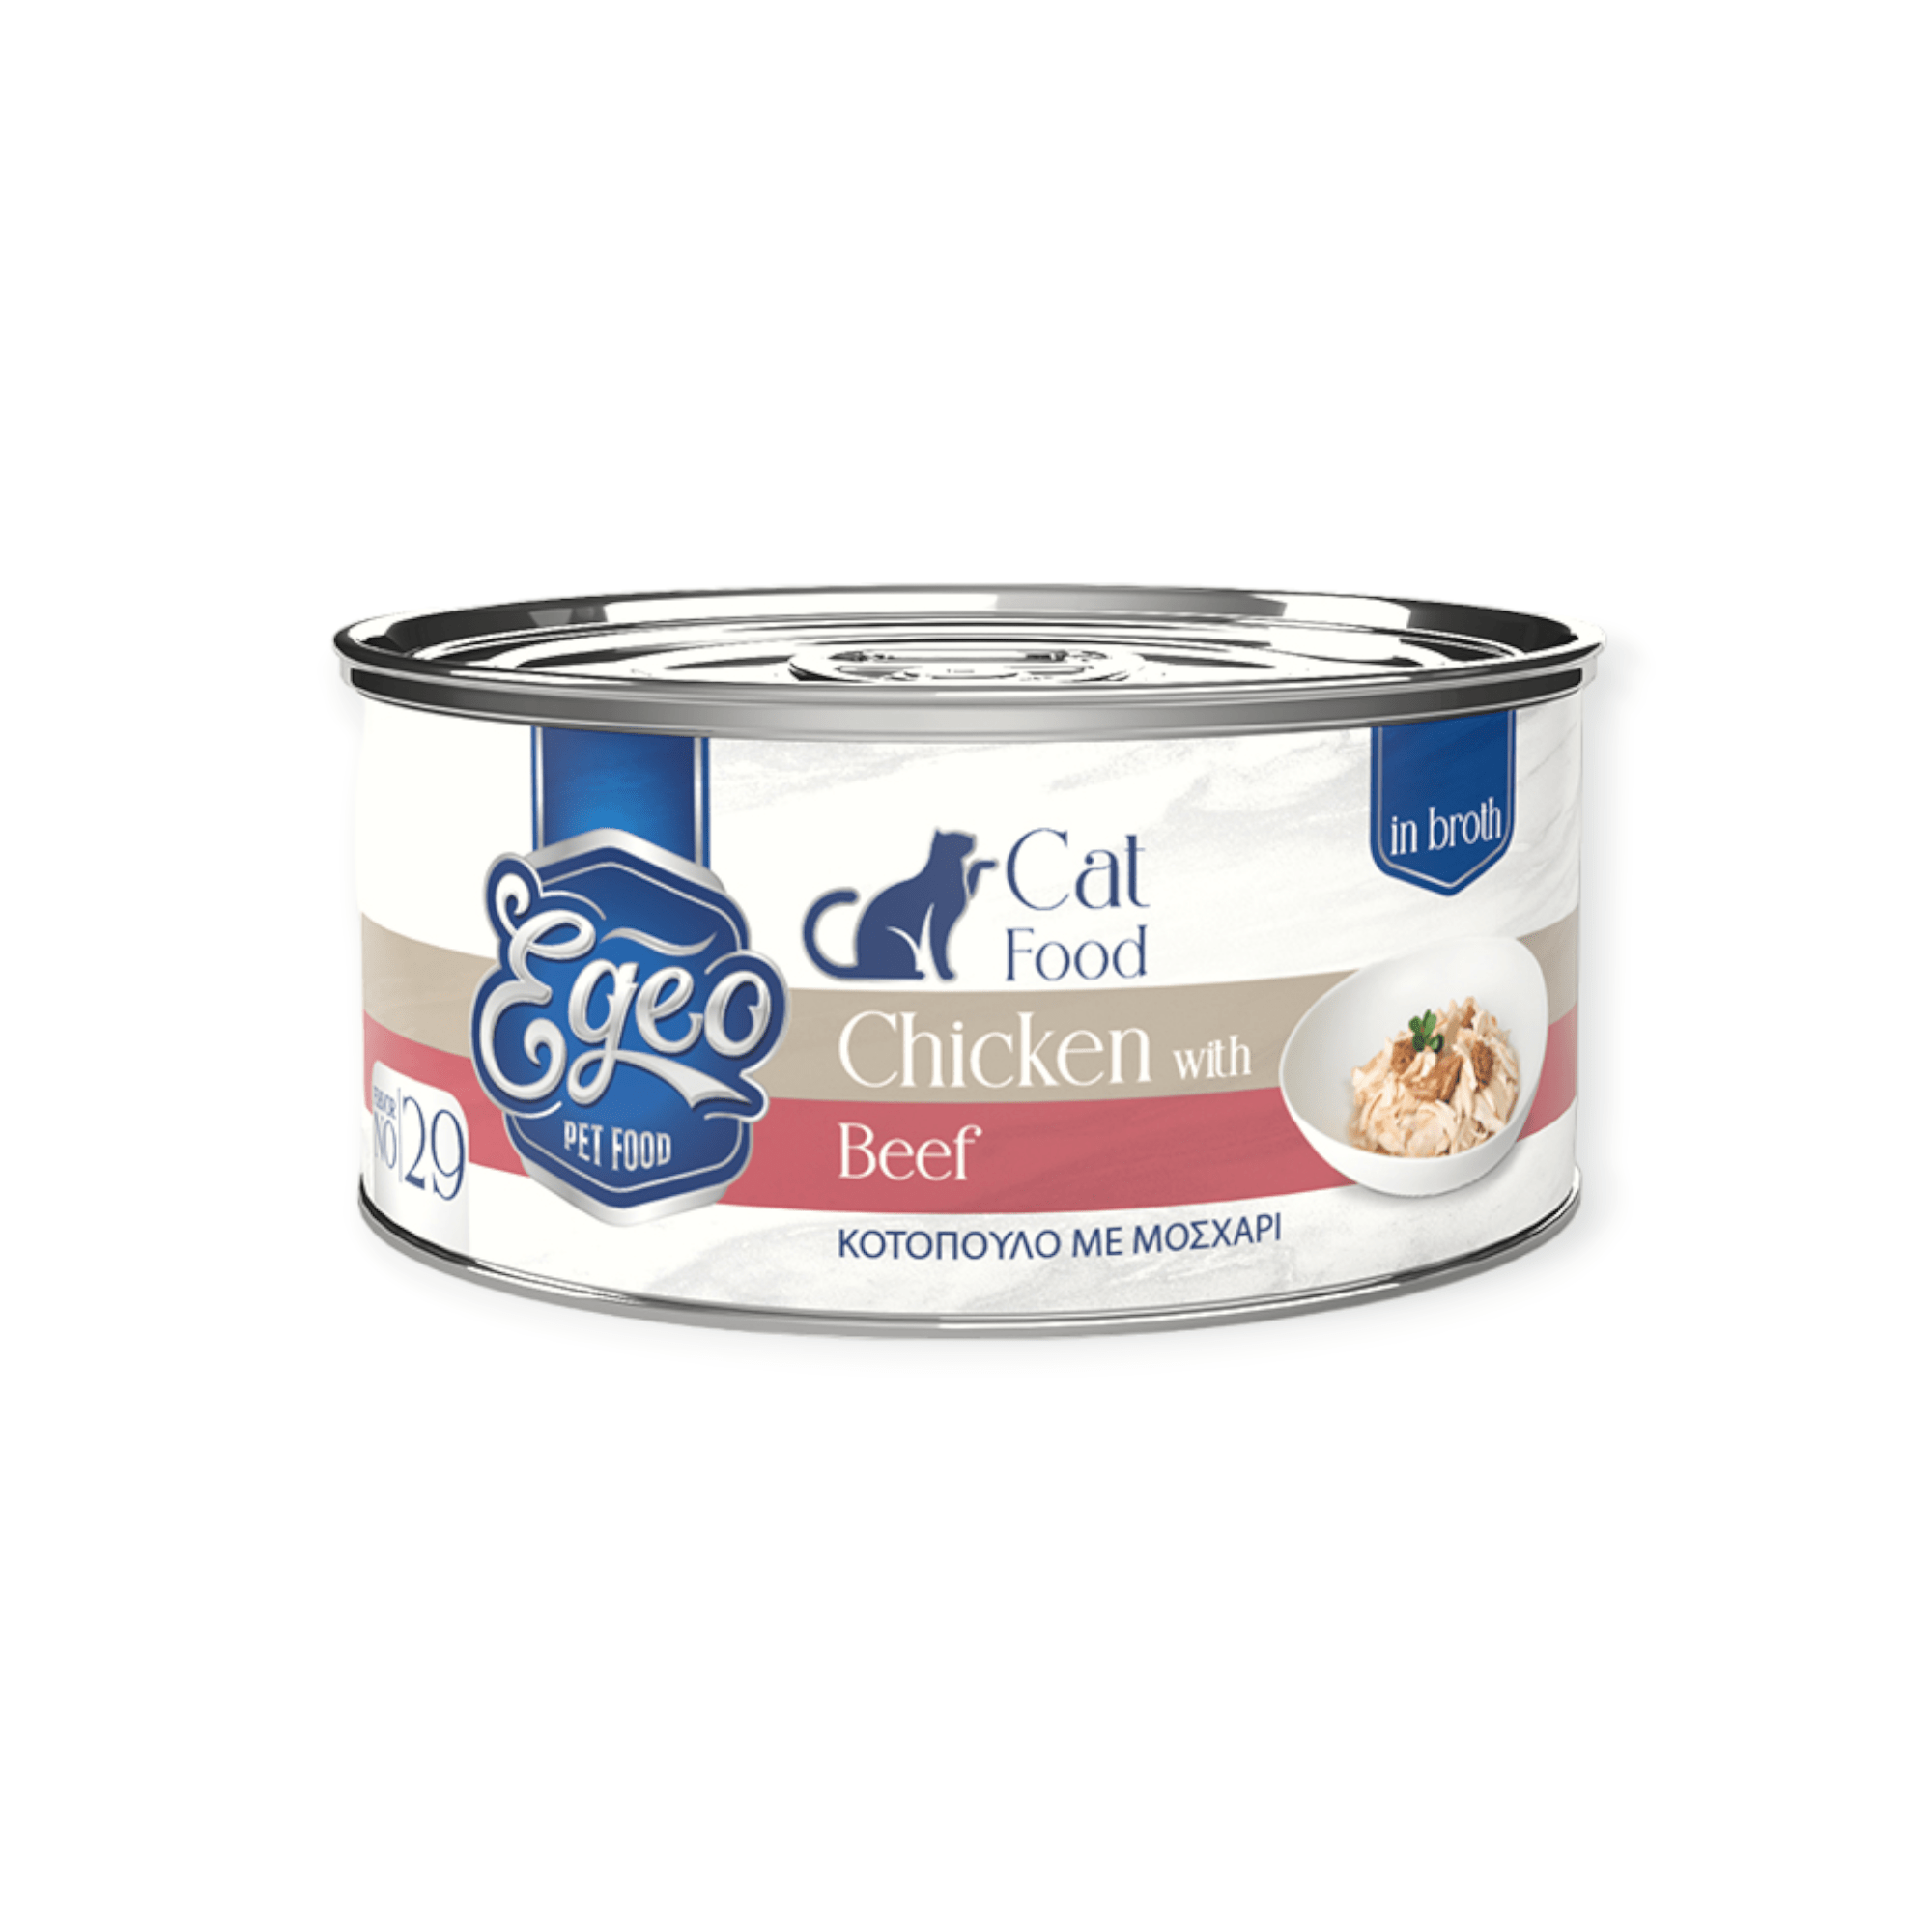 Yγρή Τροφή Γάτας Egeo Adult Κοτόπουλο Μοσχάρι Σε Ζωμό 70gr (4+1 Δώρο)